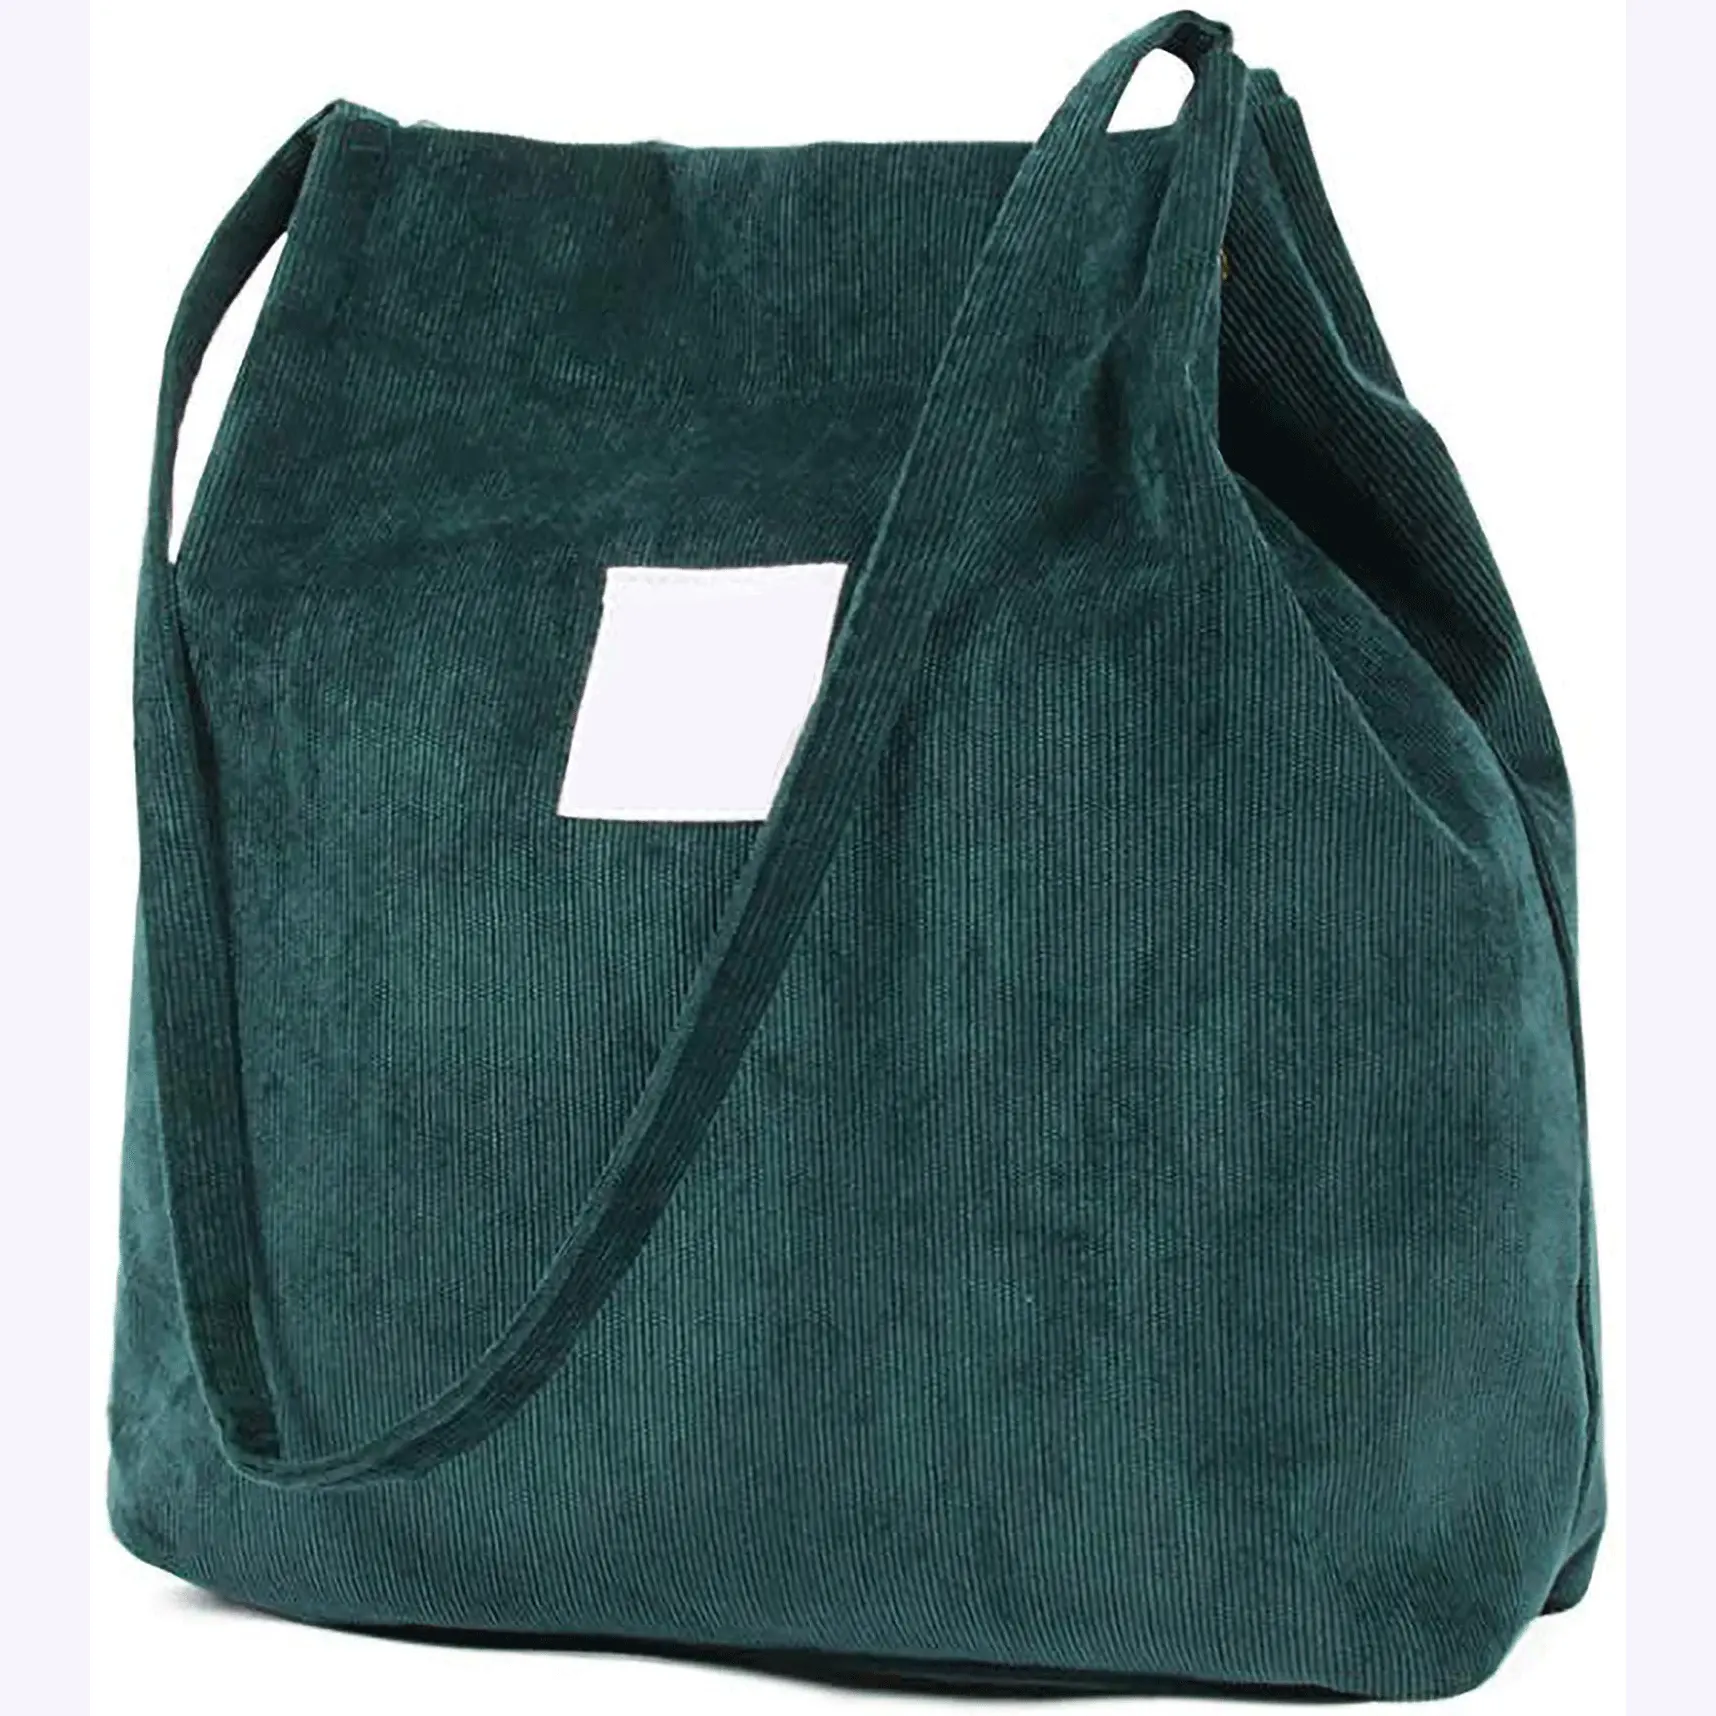 Bayi kadife sevimli Tote çanta tuval omuz çanta alışveriş çantası tote kadın çantası